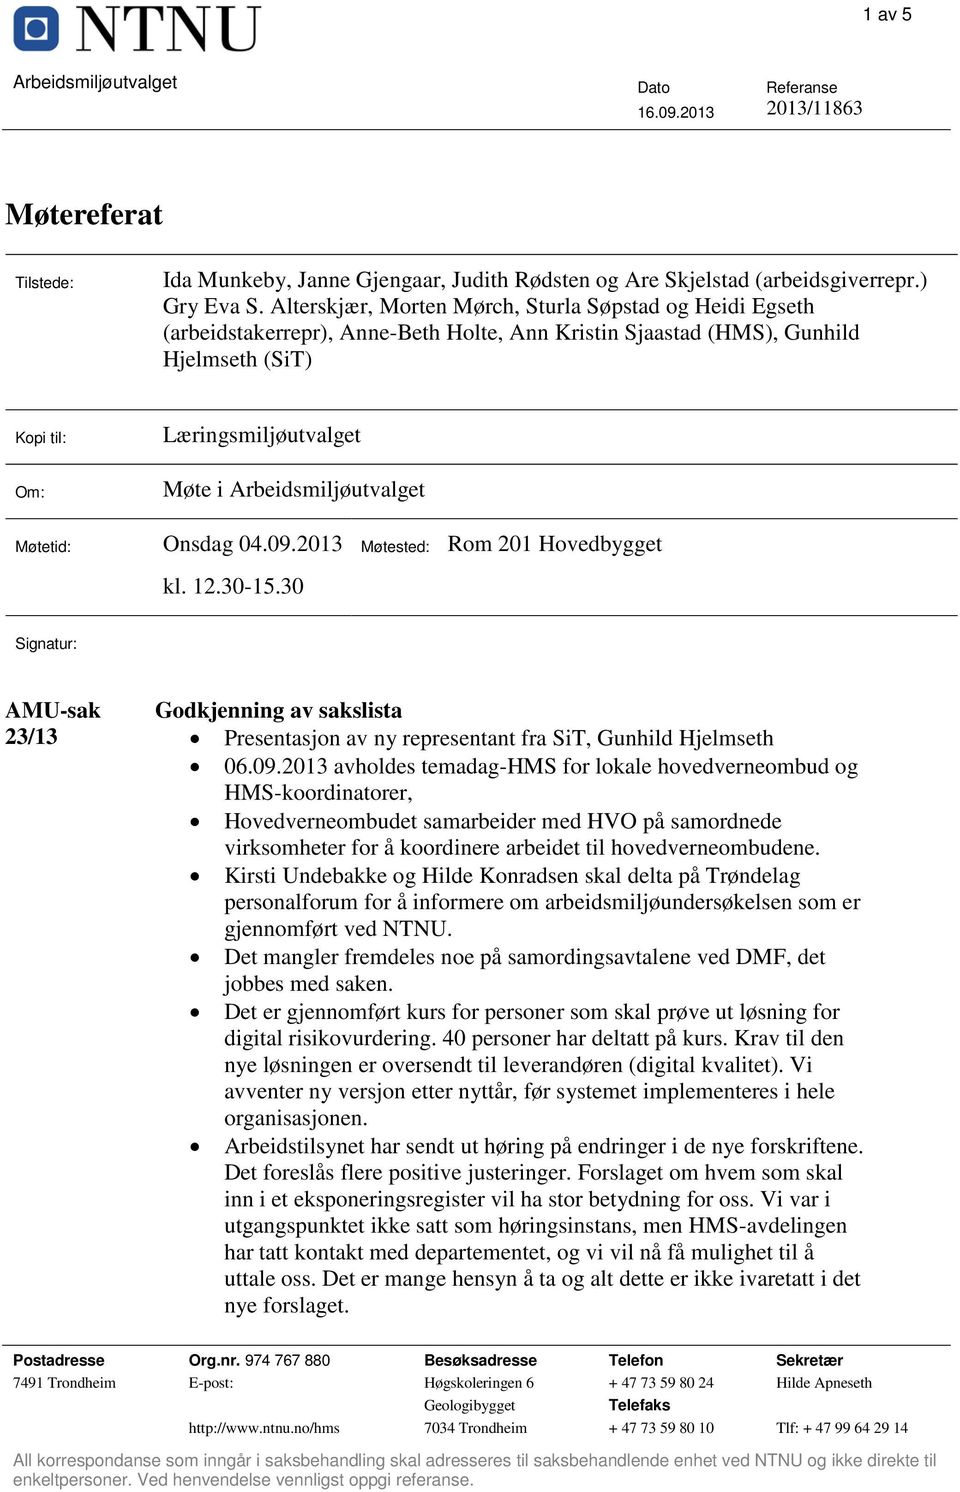 Arbeidsmiljøutvalget Møtetid: Onsdag 04.09.2013 kl. 12.30-15.